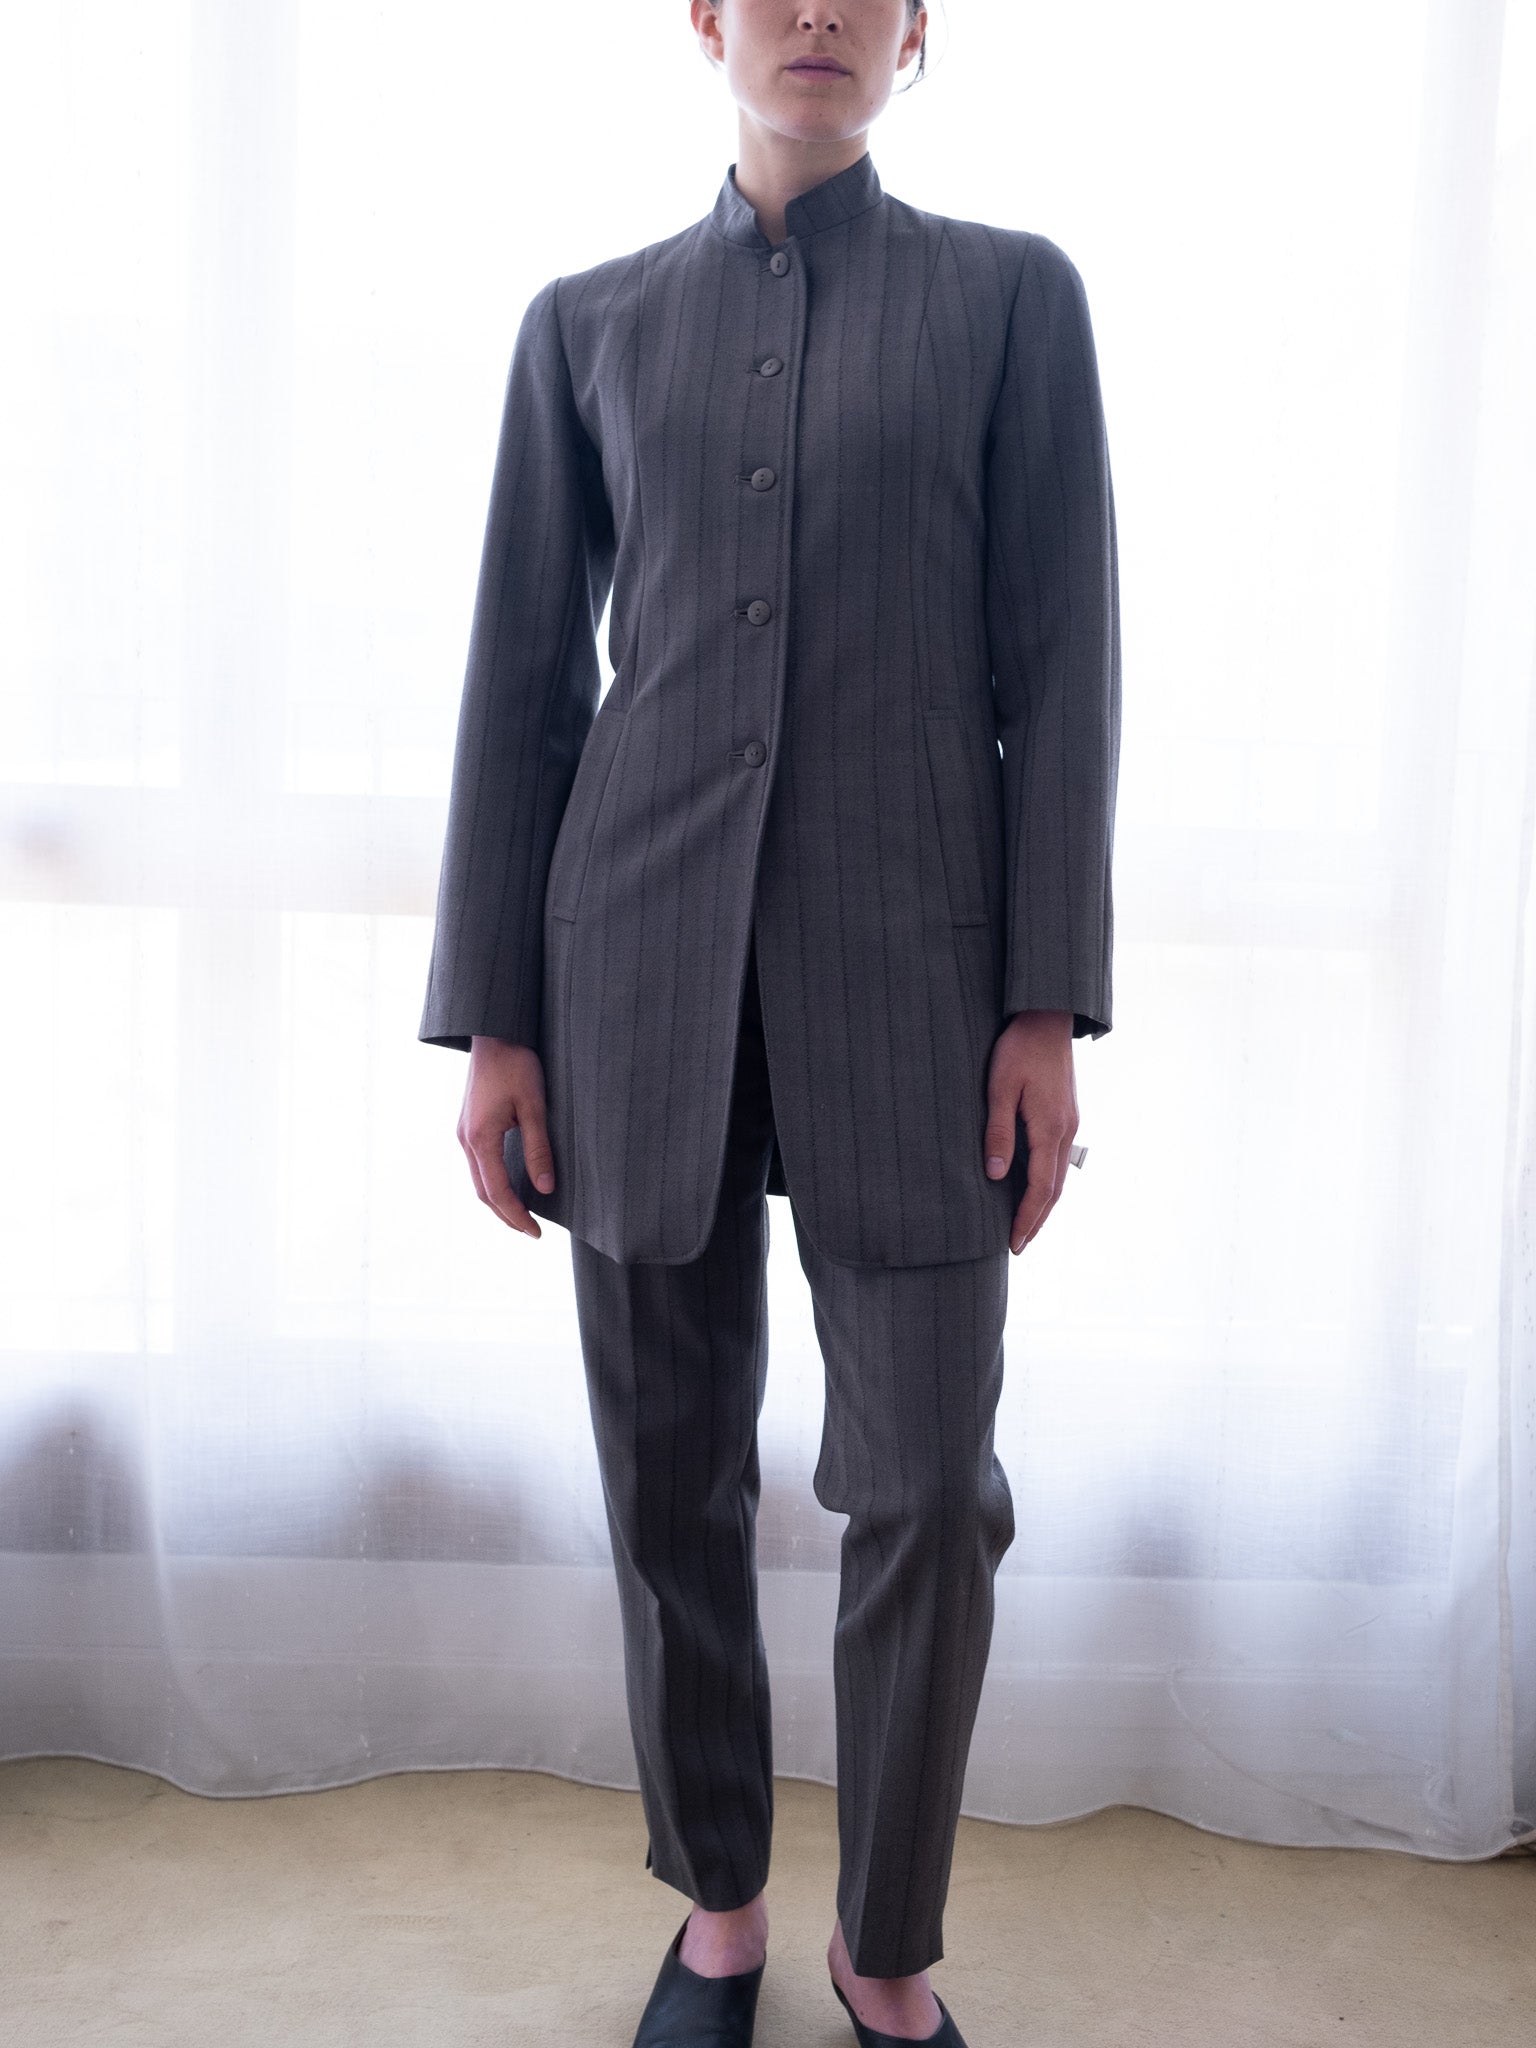 Armand ventilo collection suit set